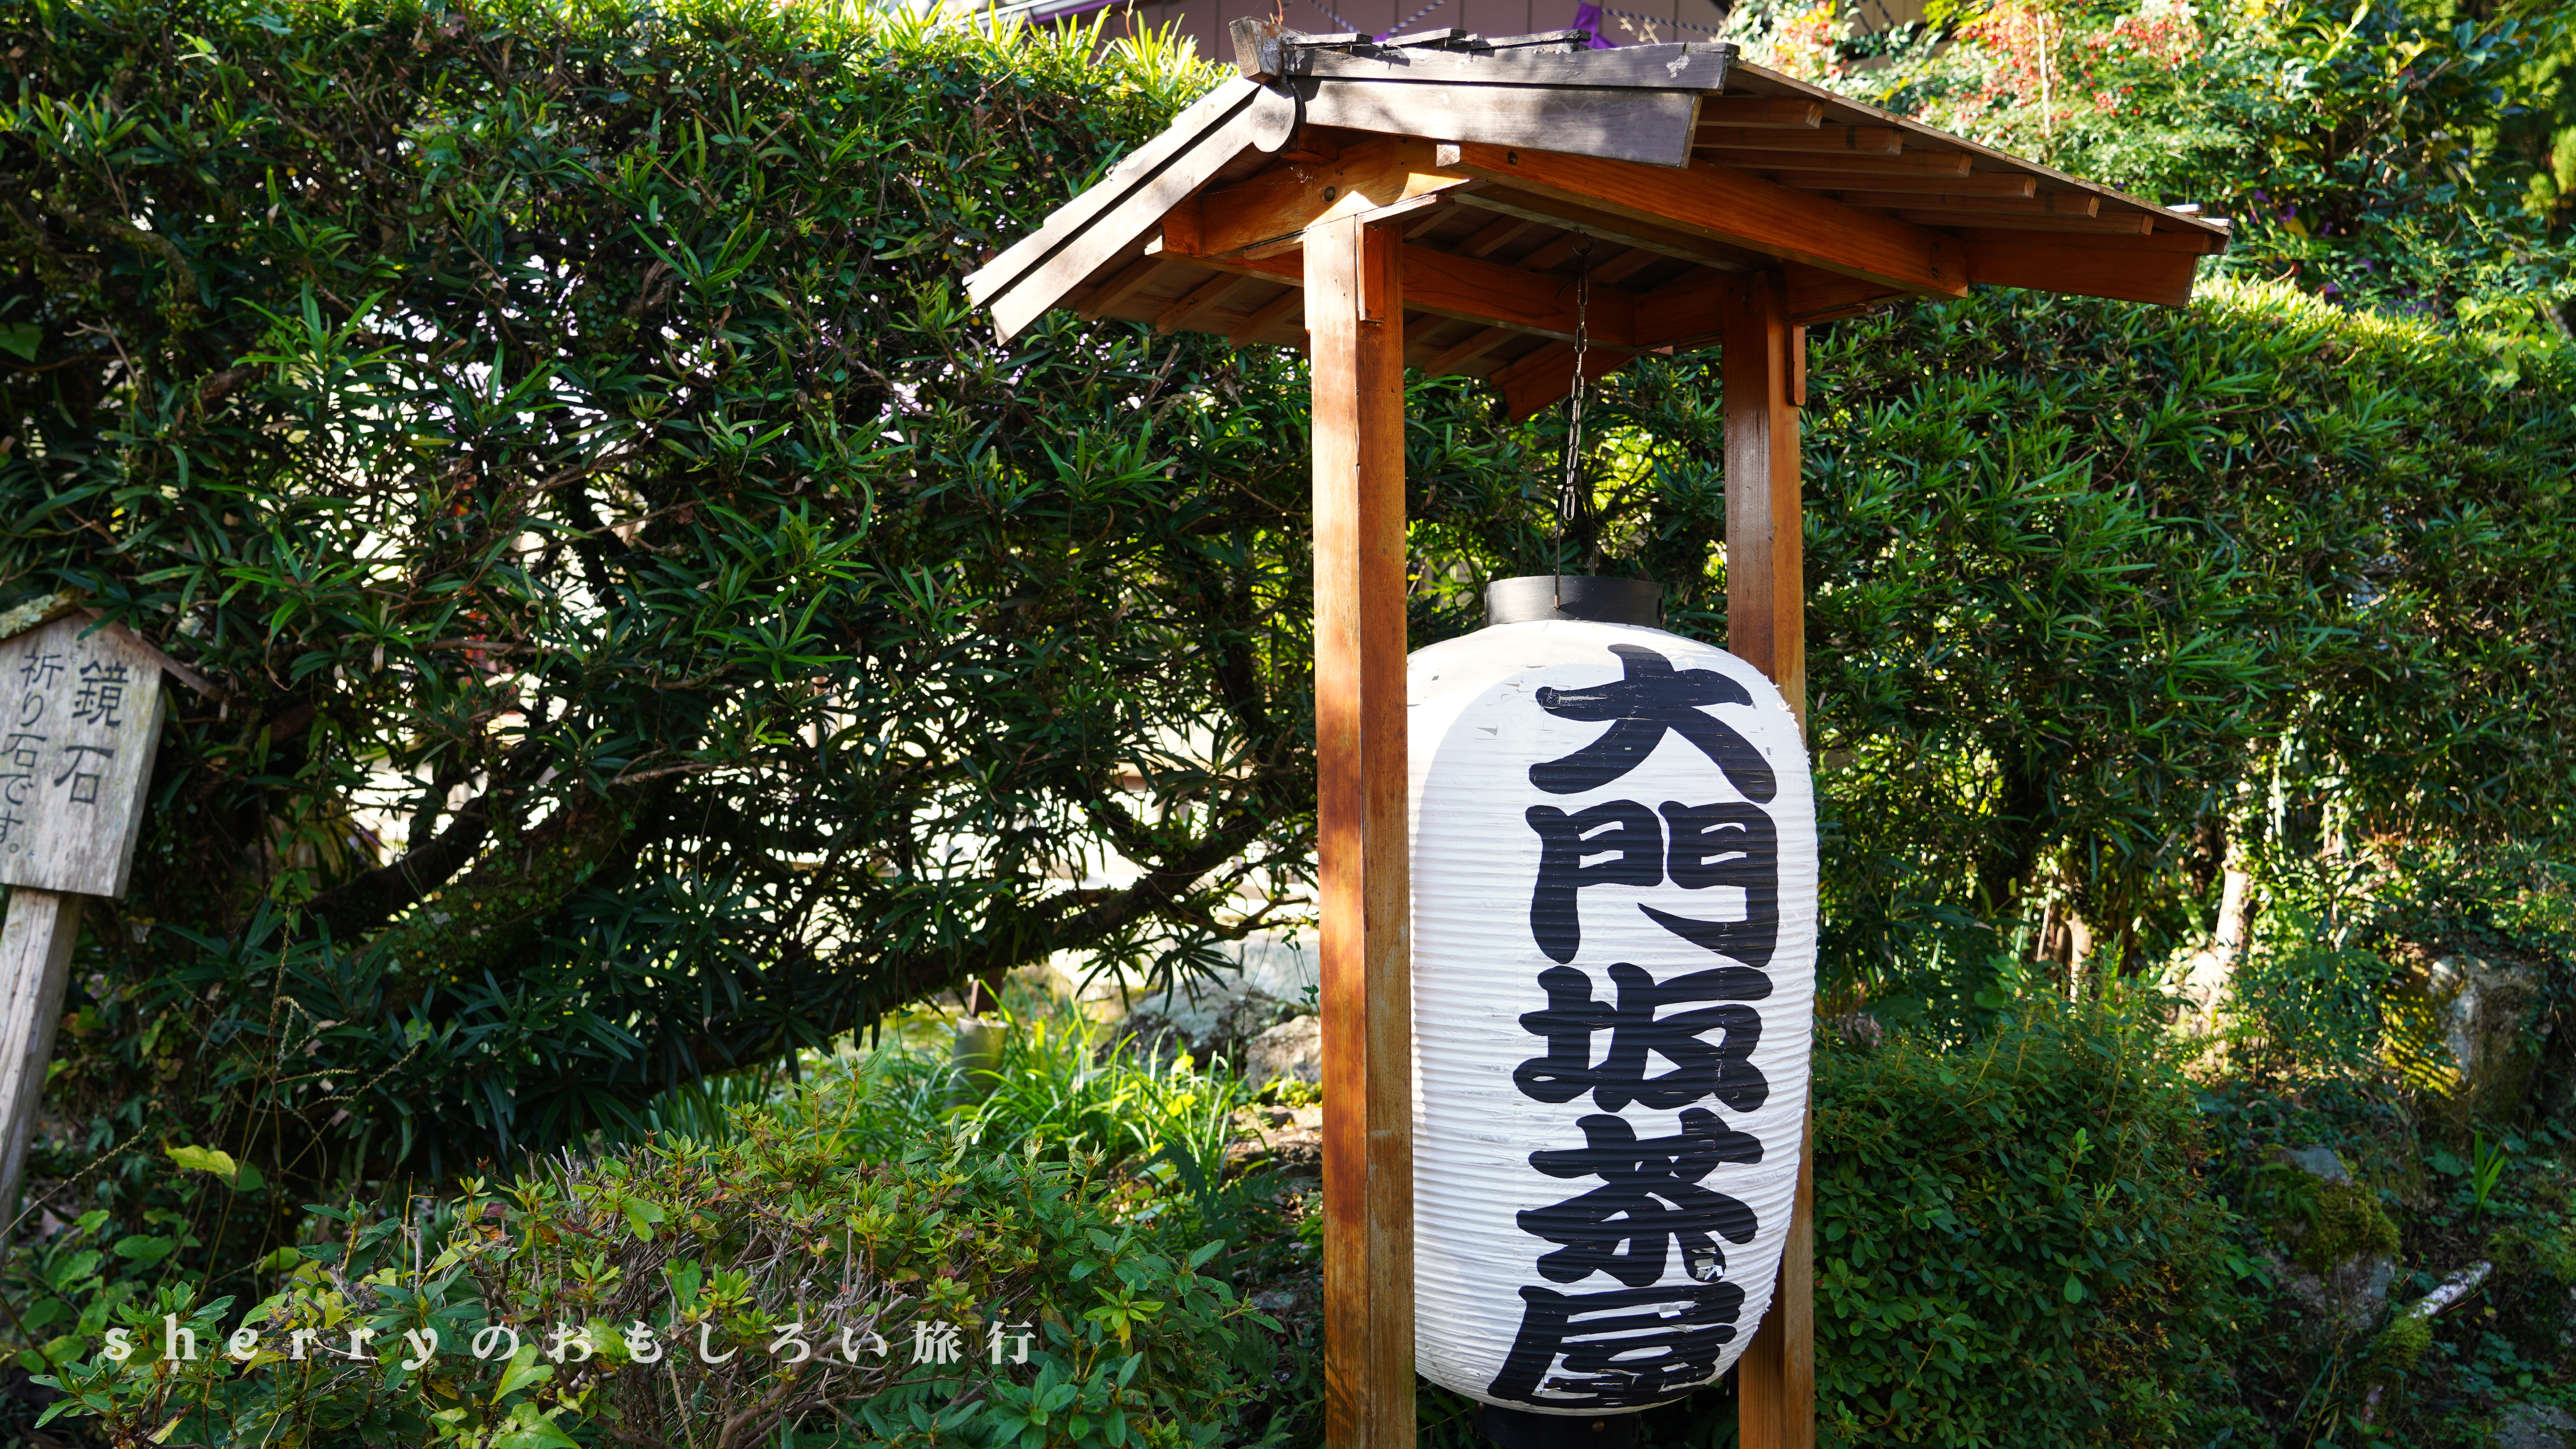 岛国的山海交响 一 访熊野古道 拜山地灵场 这些年sherry在旅拍 穷游专栏